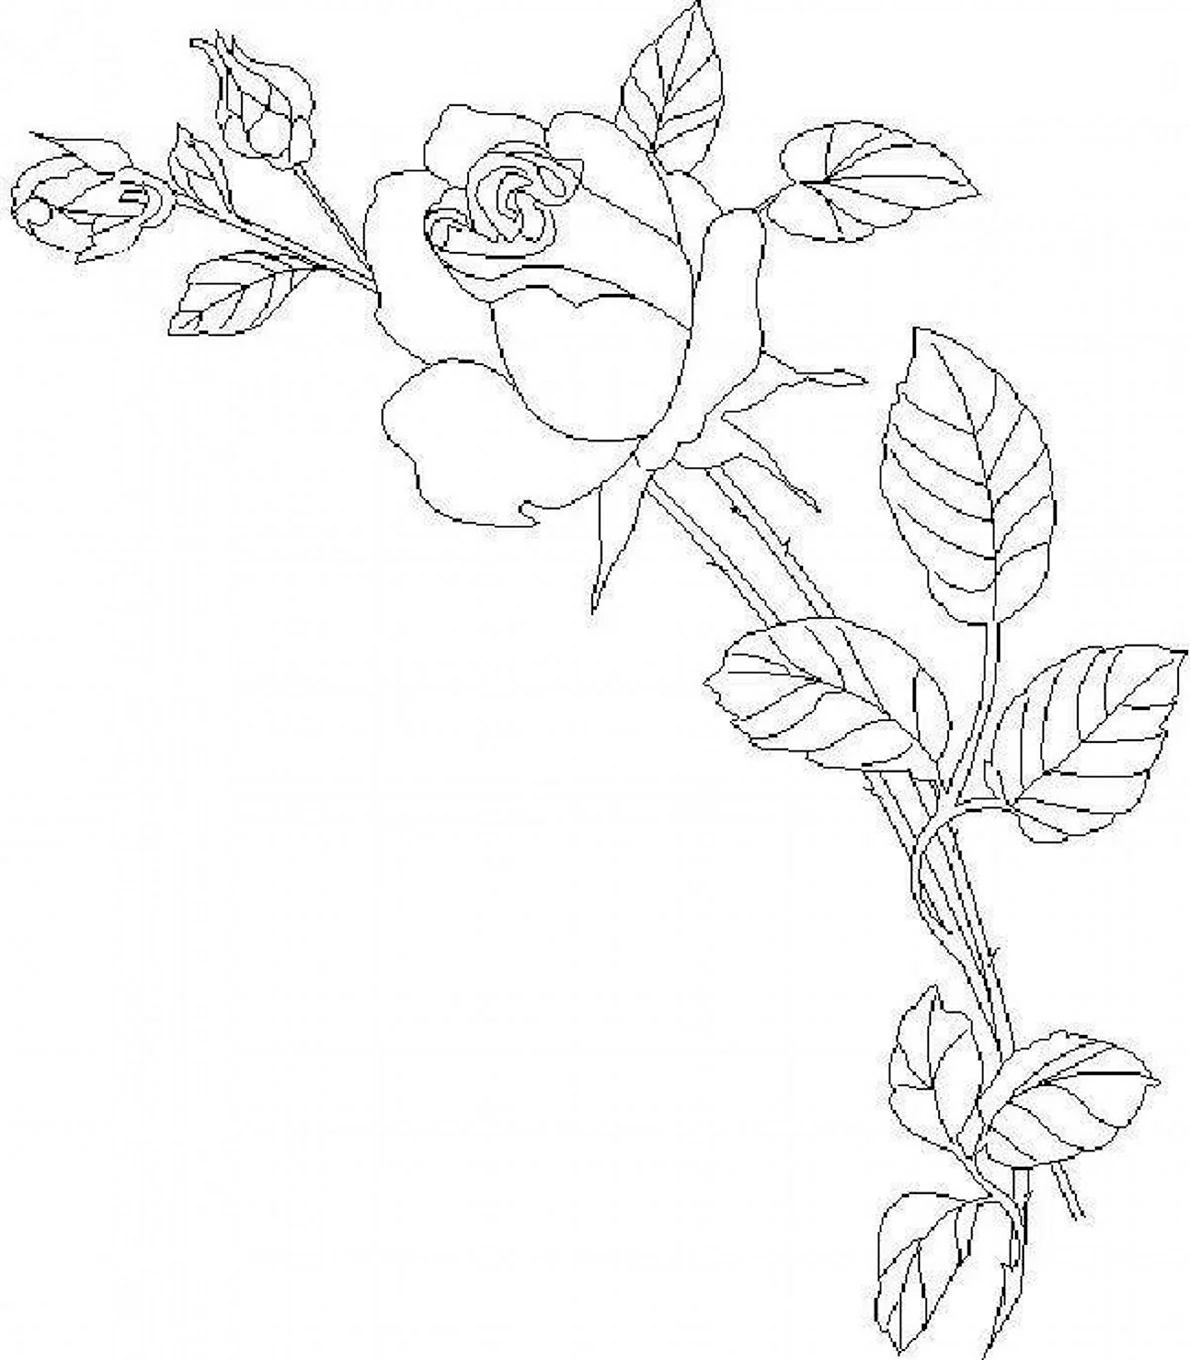 Цветы карандашом раскраска (30 шт)